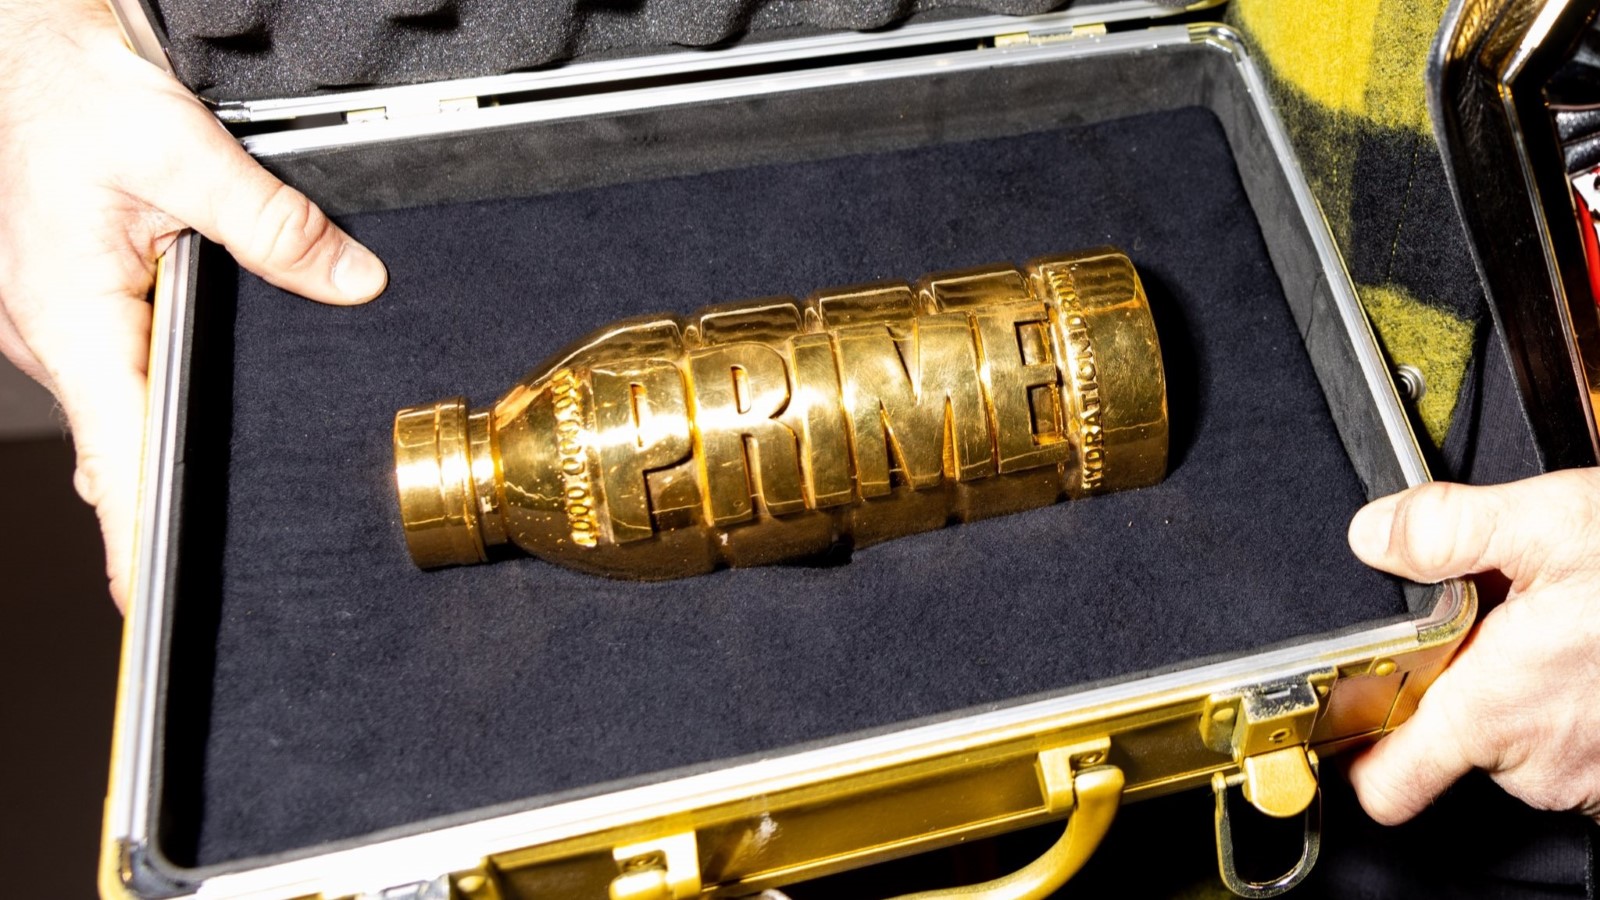 Logan Paul incinerates $500k as fans fail Golden Prime bottle challenge -  Dexerto